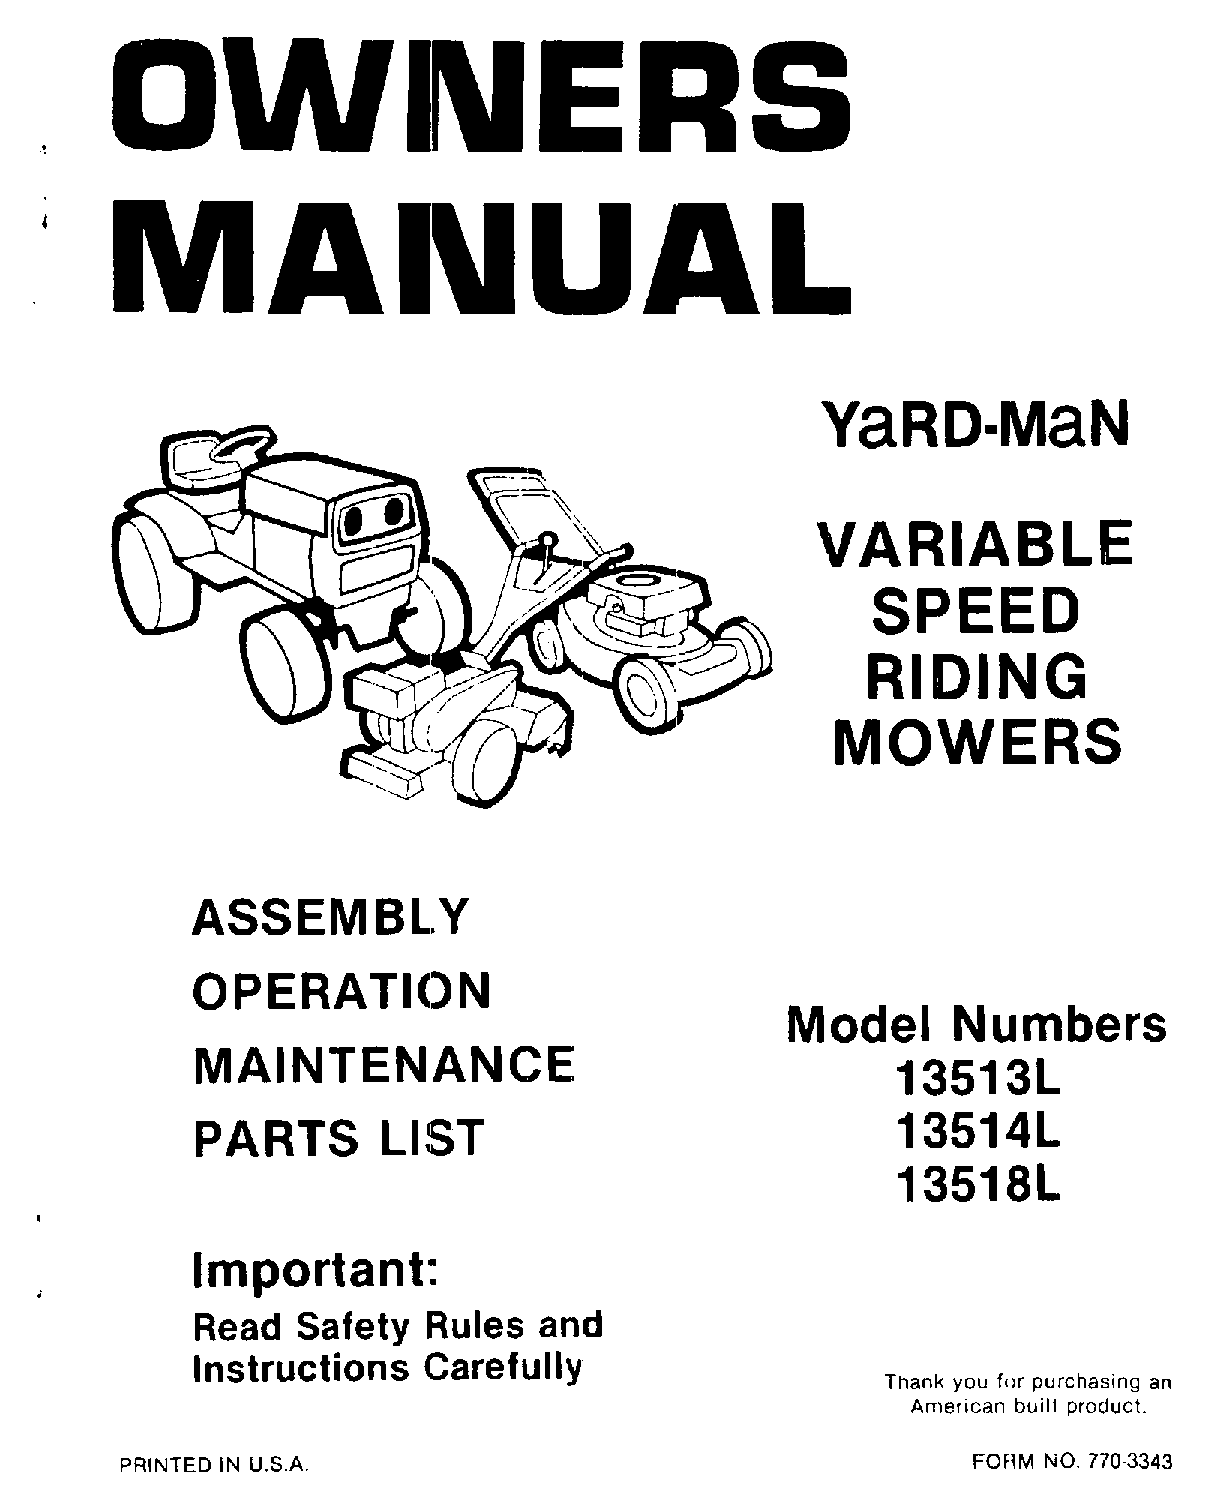 Yard-Man 13514L, 13513L, 13518L User Manual